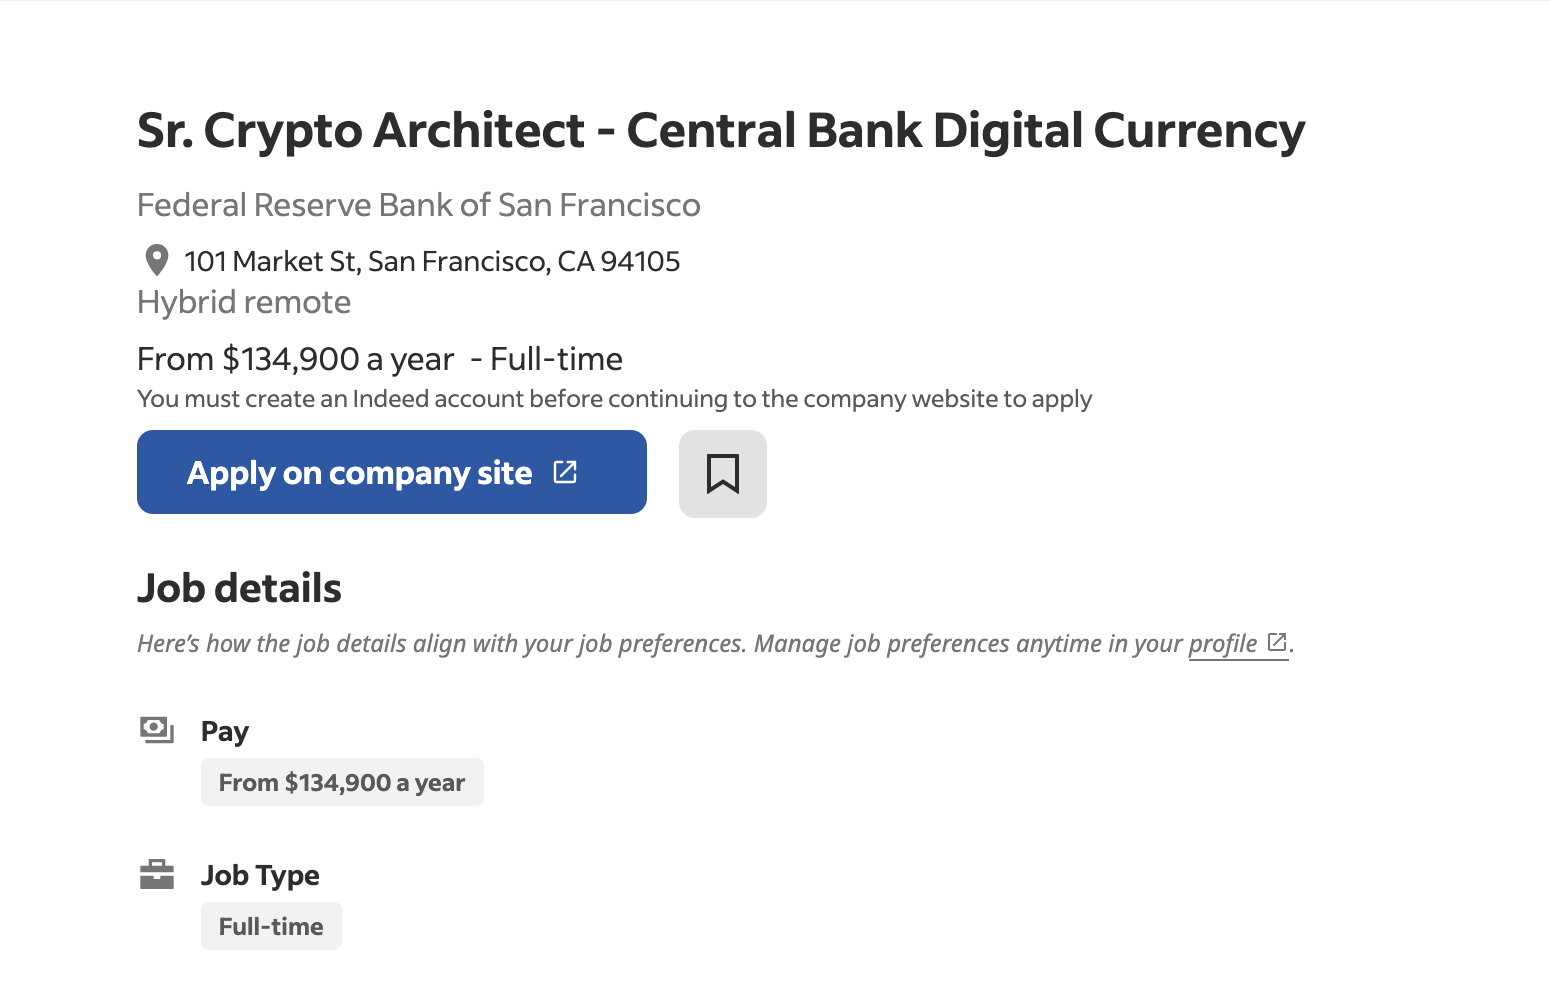 Федеральная резервная система Сан-Франциско нанимает криптографа для проекта CBDC